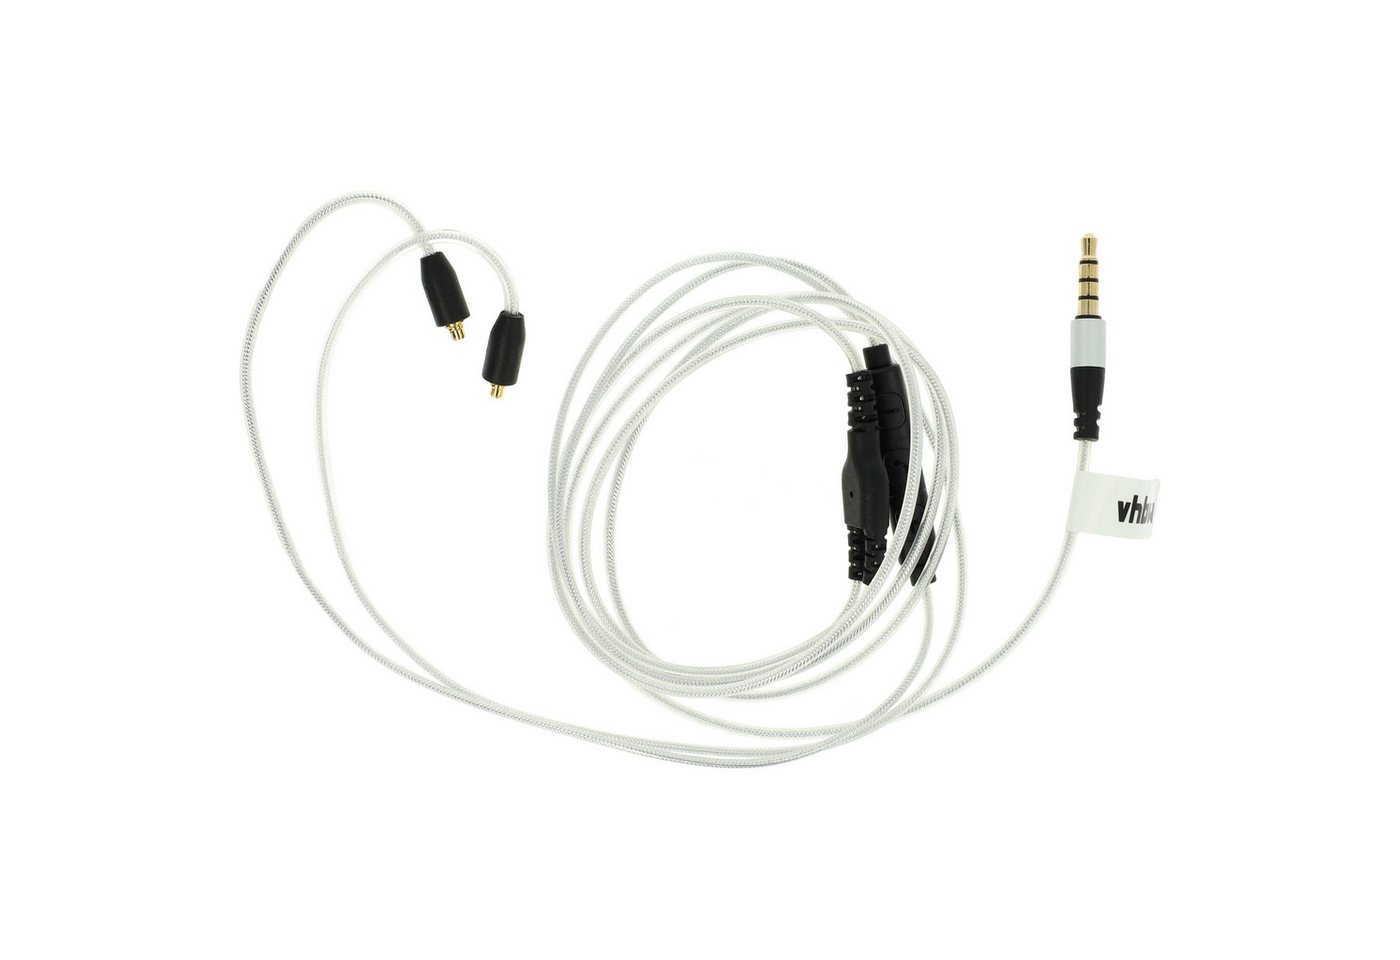 vhbw passend für Westone W60, W80 Kopfhörer Audio-Kabel, passend für Westone W60, W80 Kopfhörer von vhbw